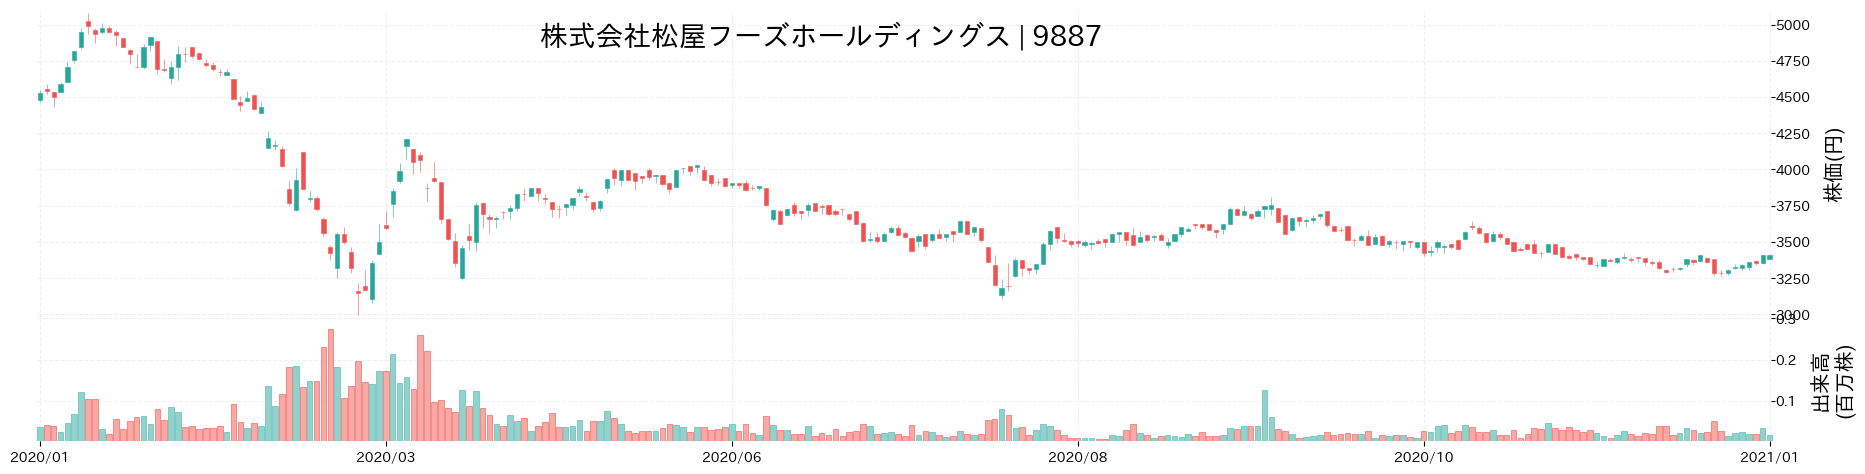 松屋フーズホールディングスの株価推移(2020)